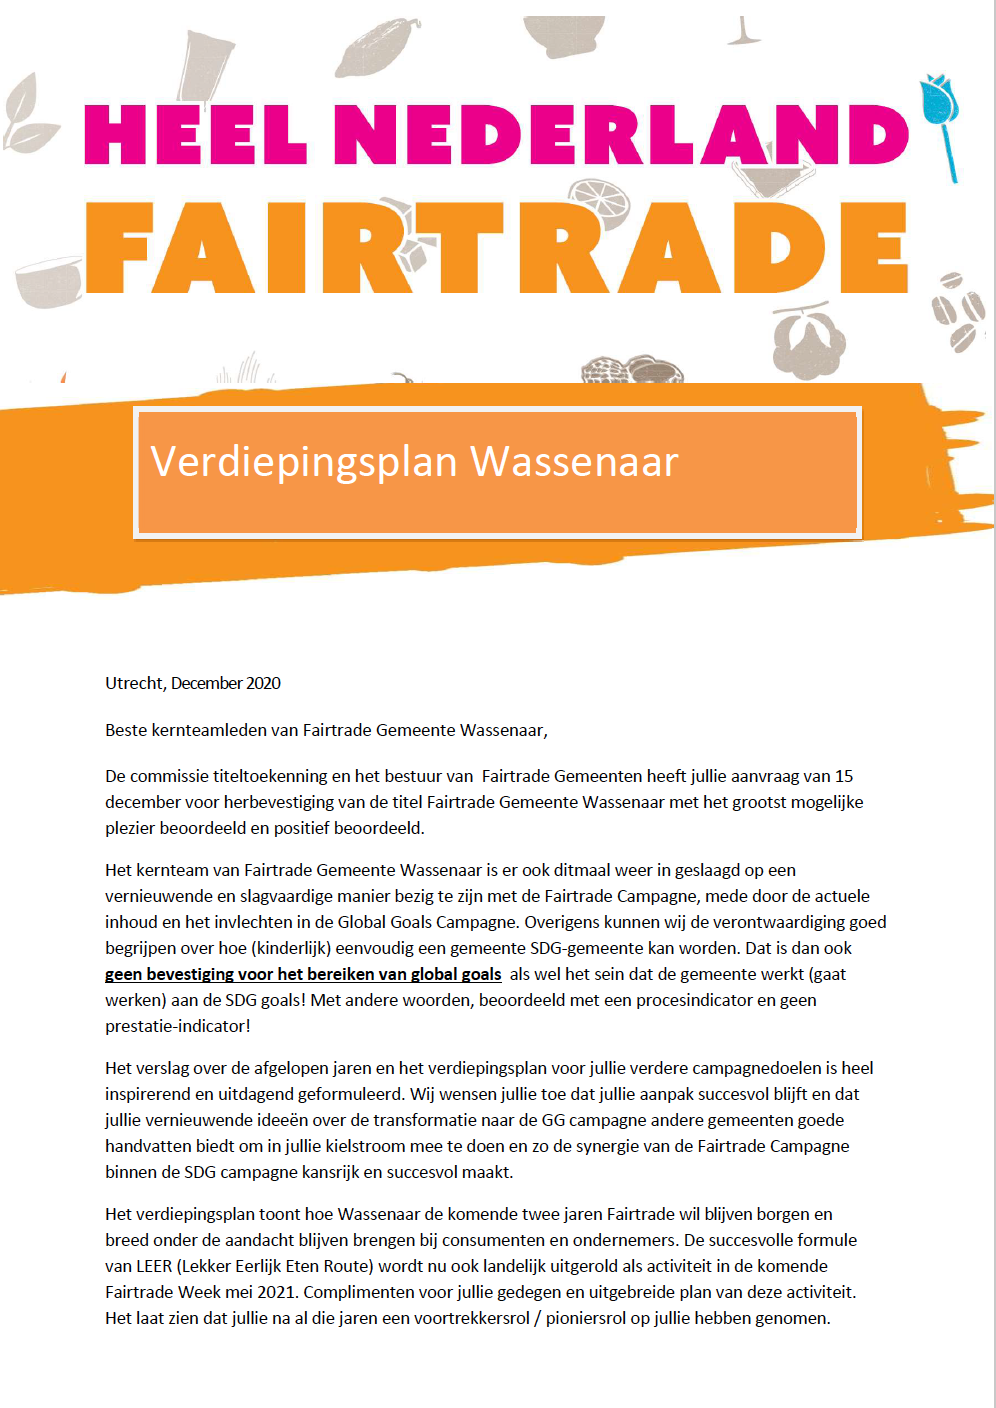 Verdiepingsplan Wassenaar Fairtrade